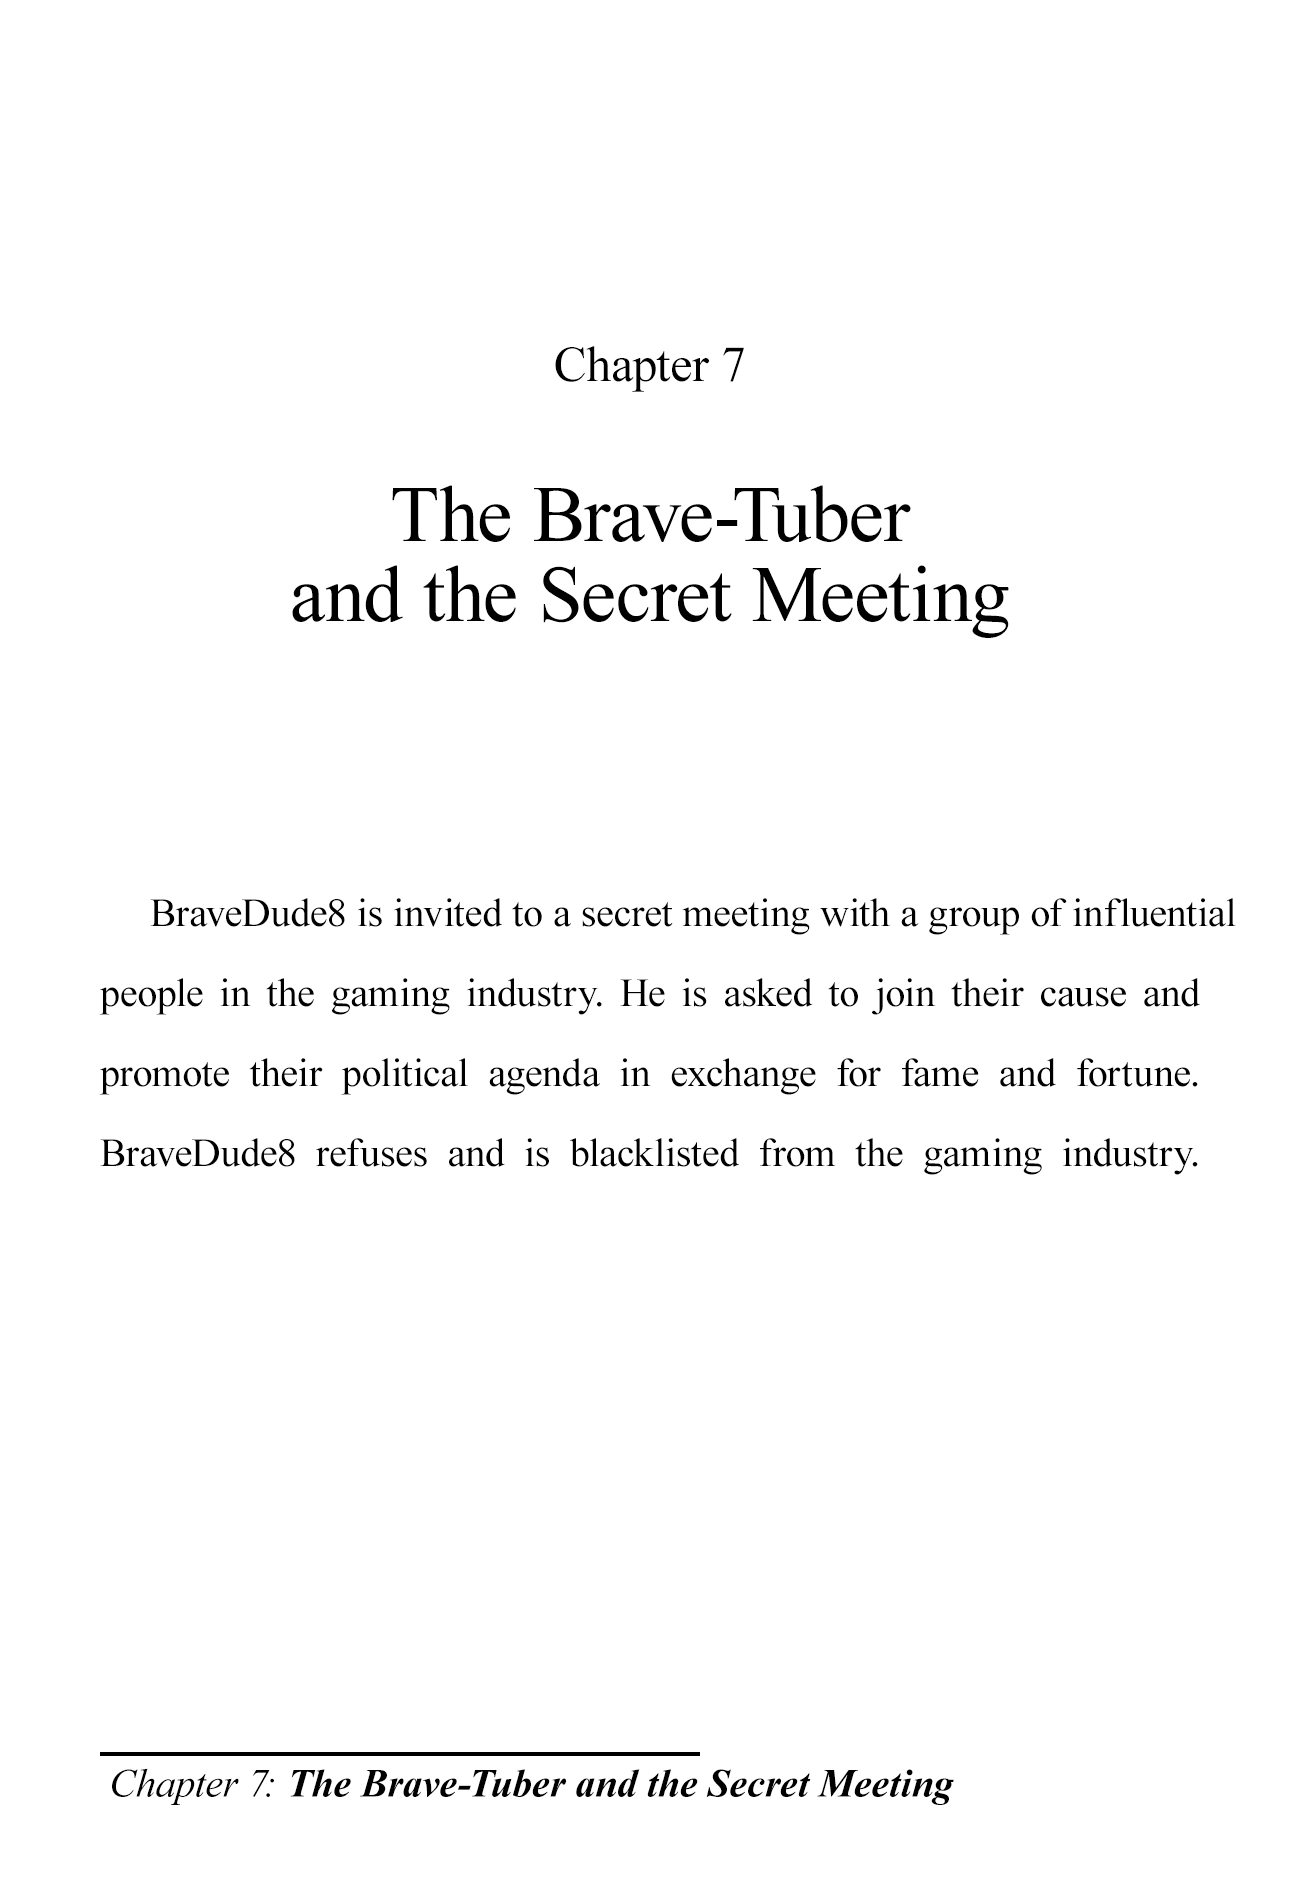 The Brave-Tuber 7